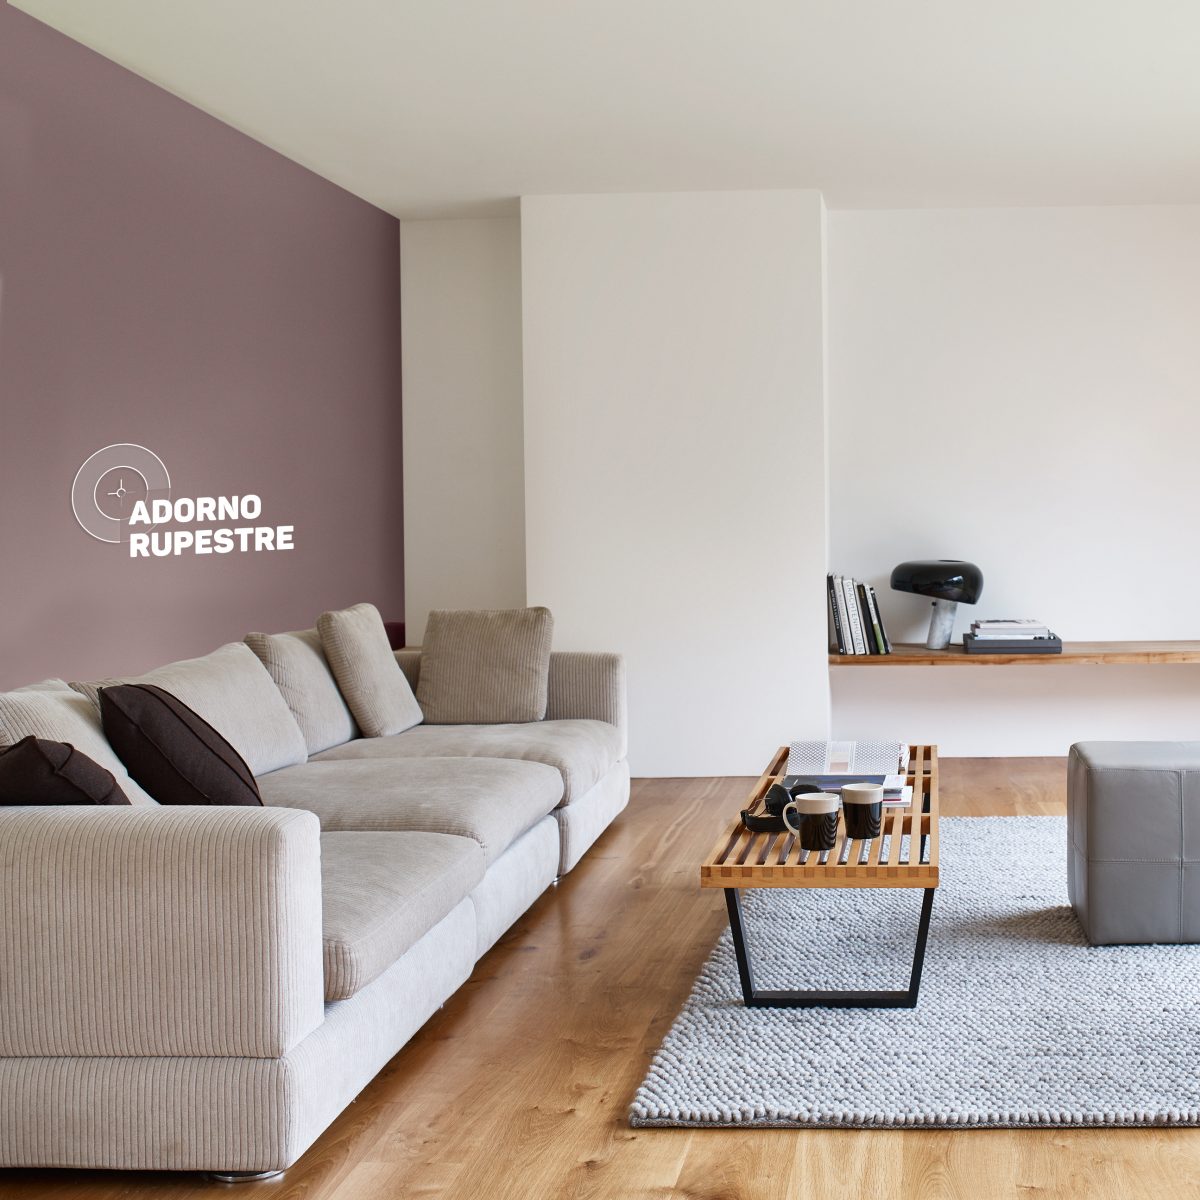 6 dicas de cores para sala pequena que ampliam o espaço - mm home&decor |  Cores para sala pequena, Cores para sala, Salas pequenas